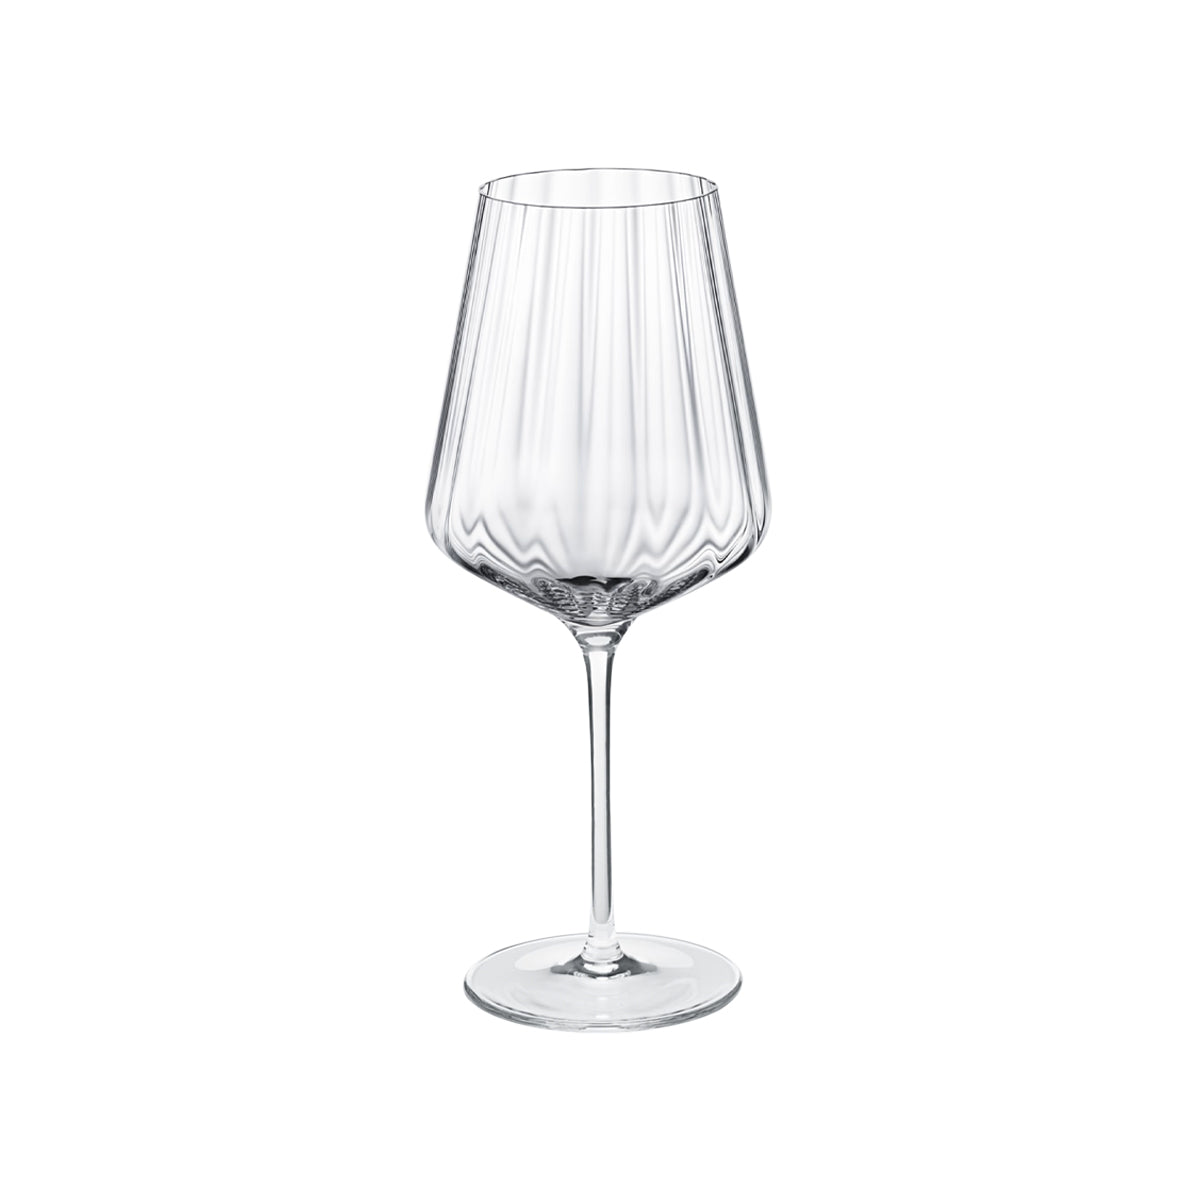 Georg Jensen Bernadotte White Wine Glasses - Set of 6